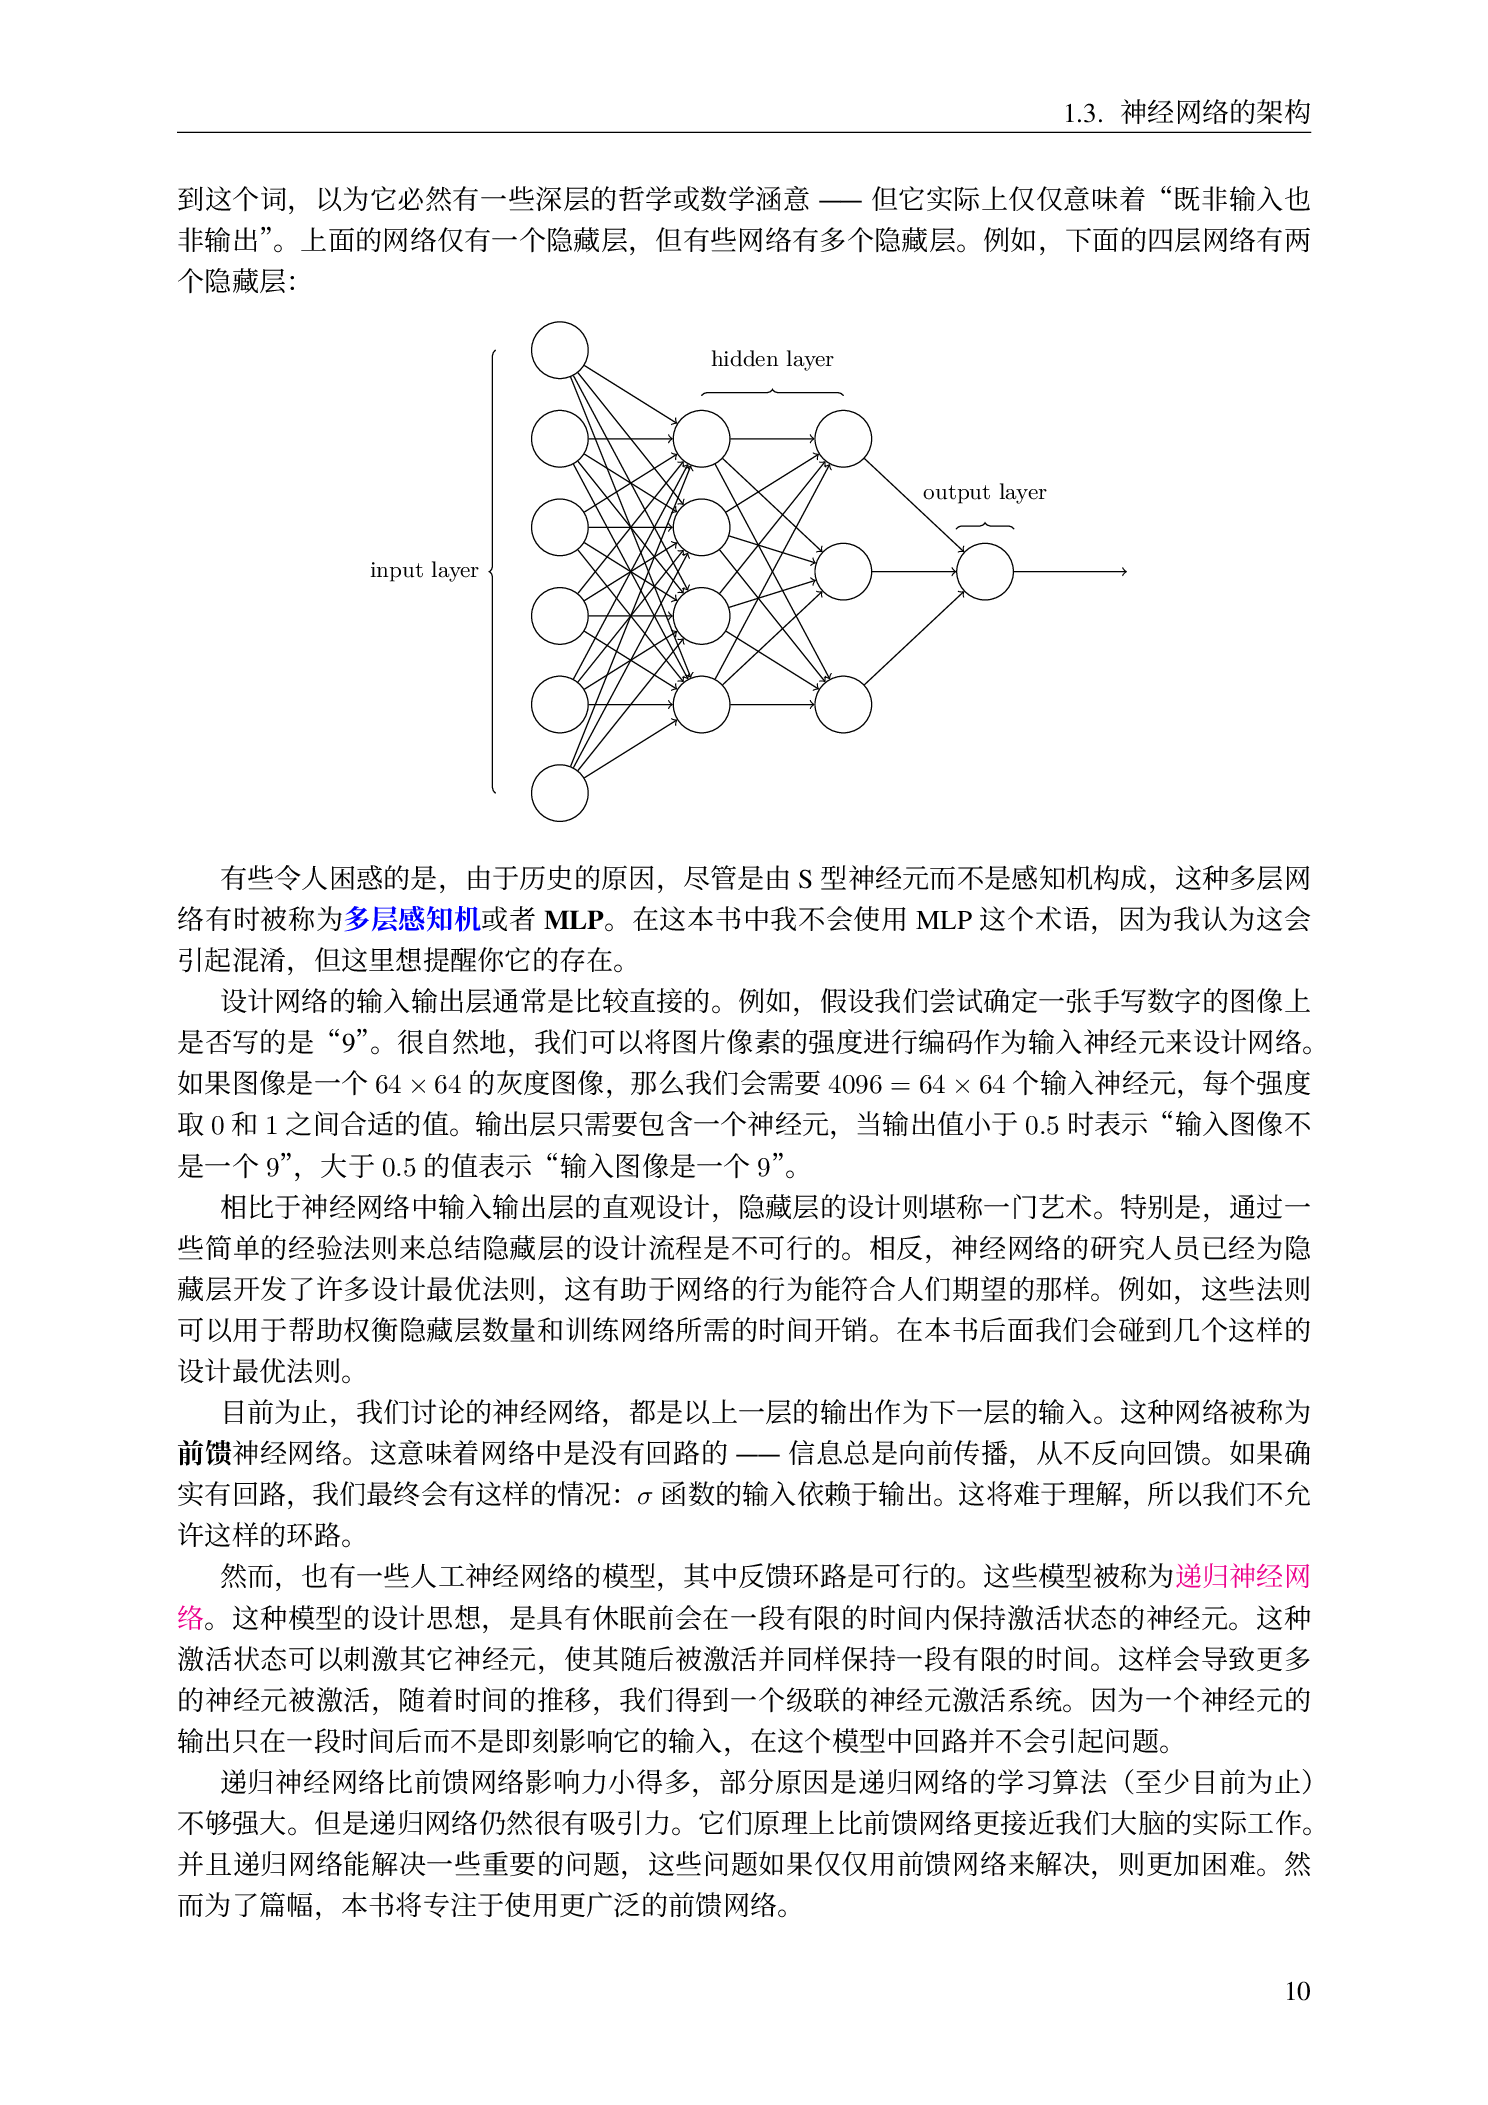 LaTeX 排版的《神经网络与深度学习》中译本